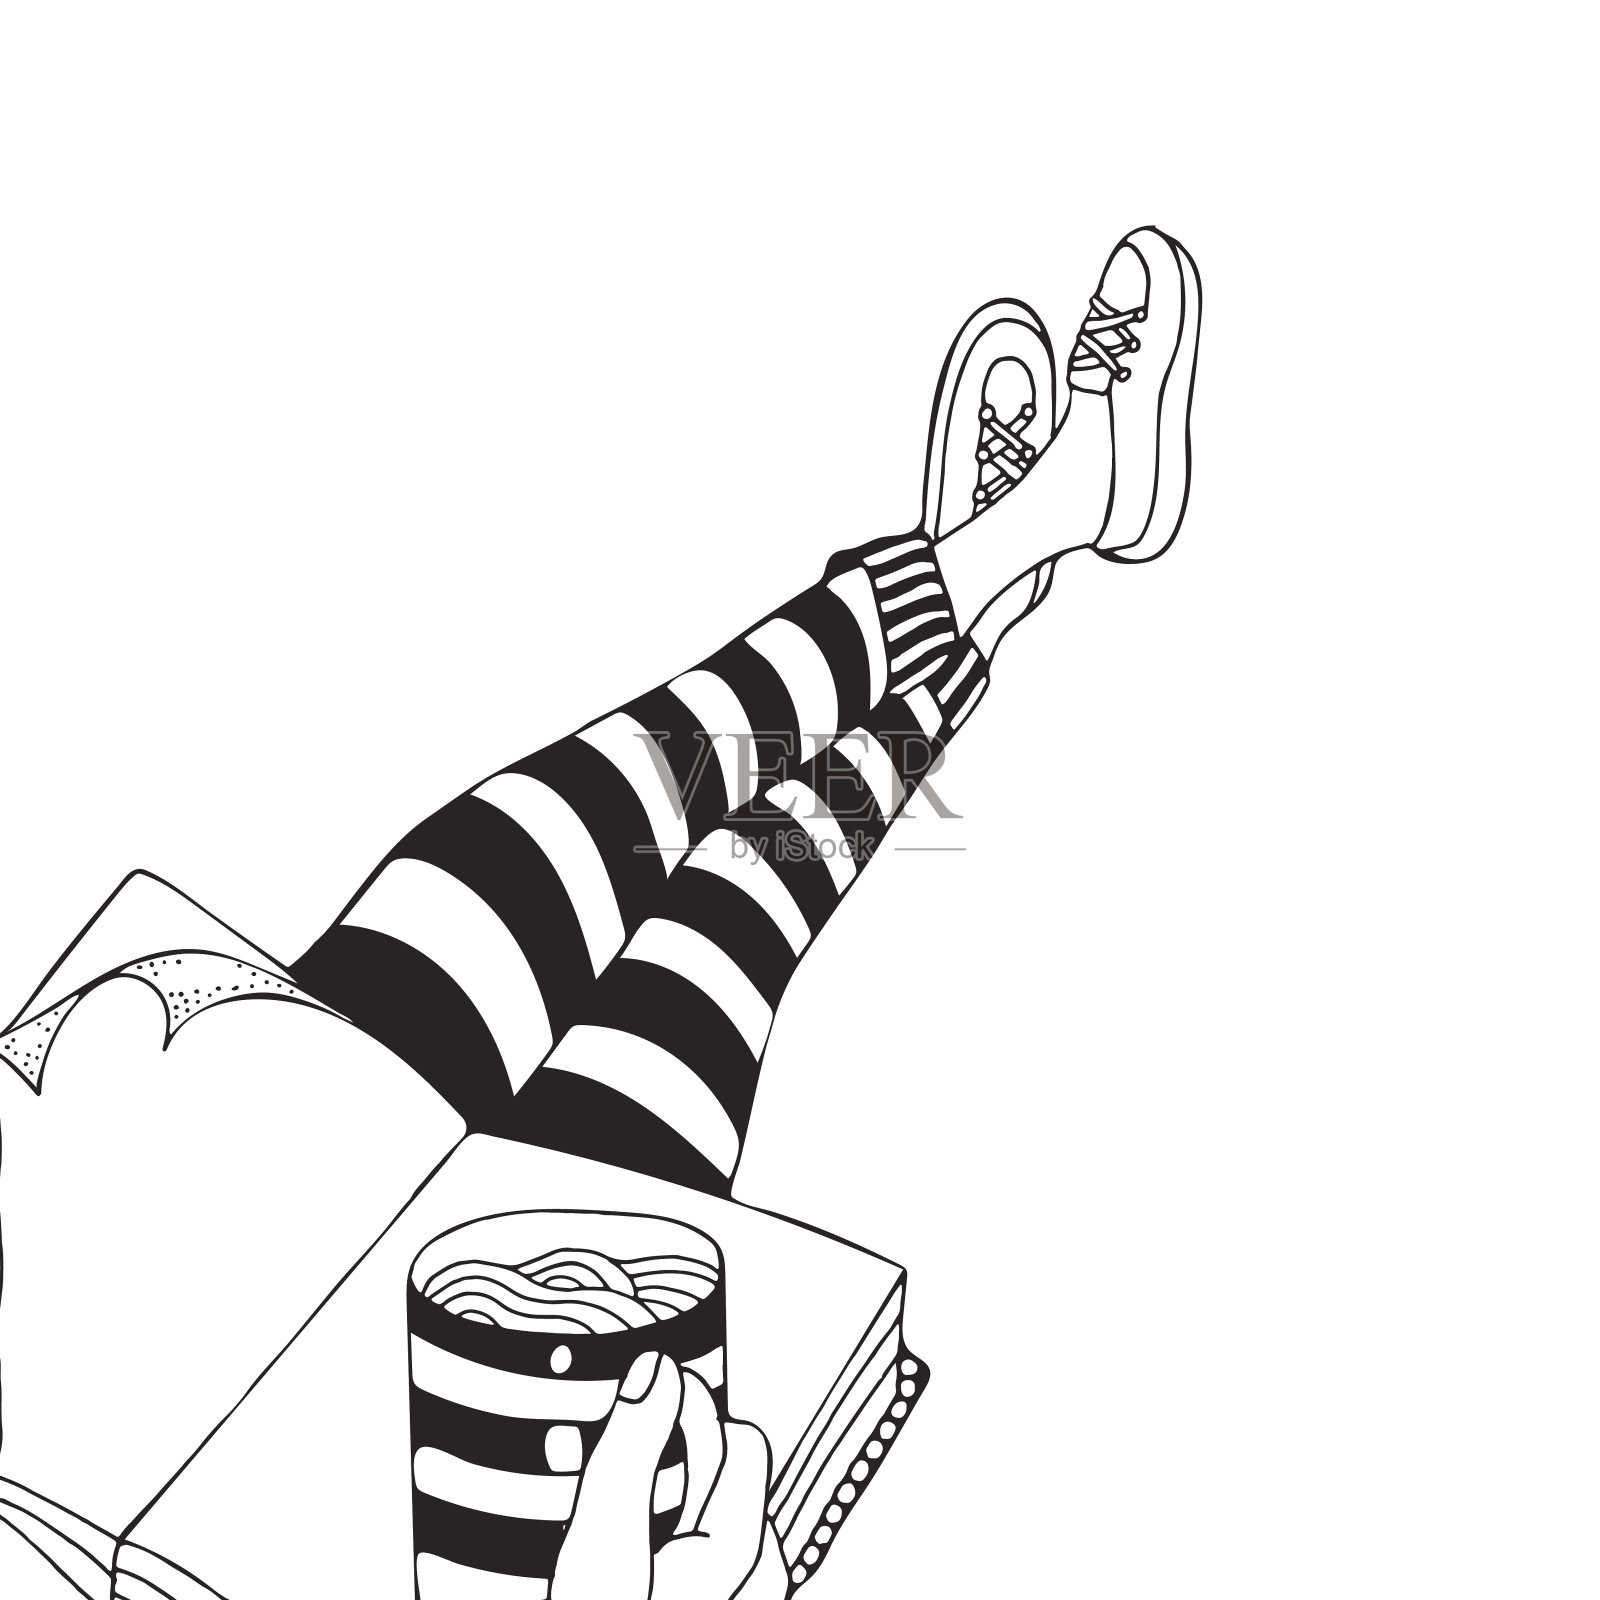 有人坐着喝咖啡。人的腿。黑色和白色。卡通风格。涂鸦,向量。设计元素图片